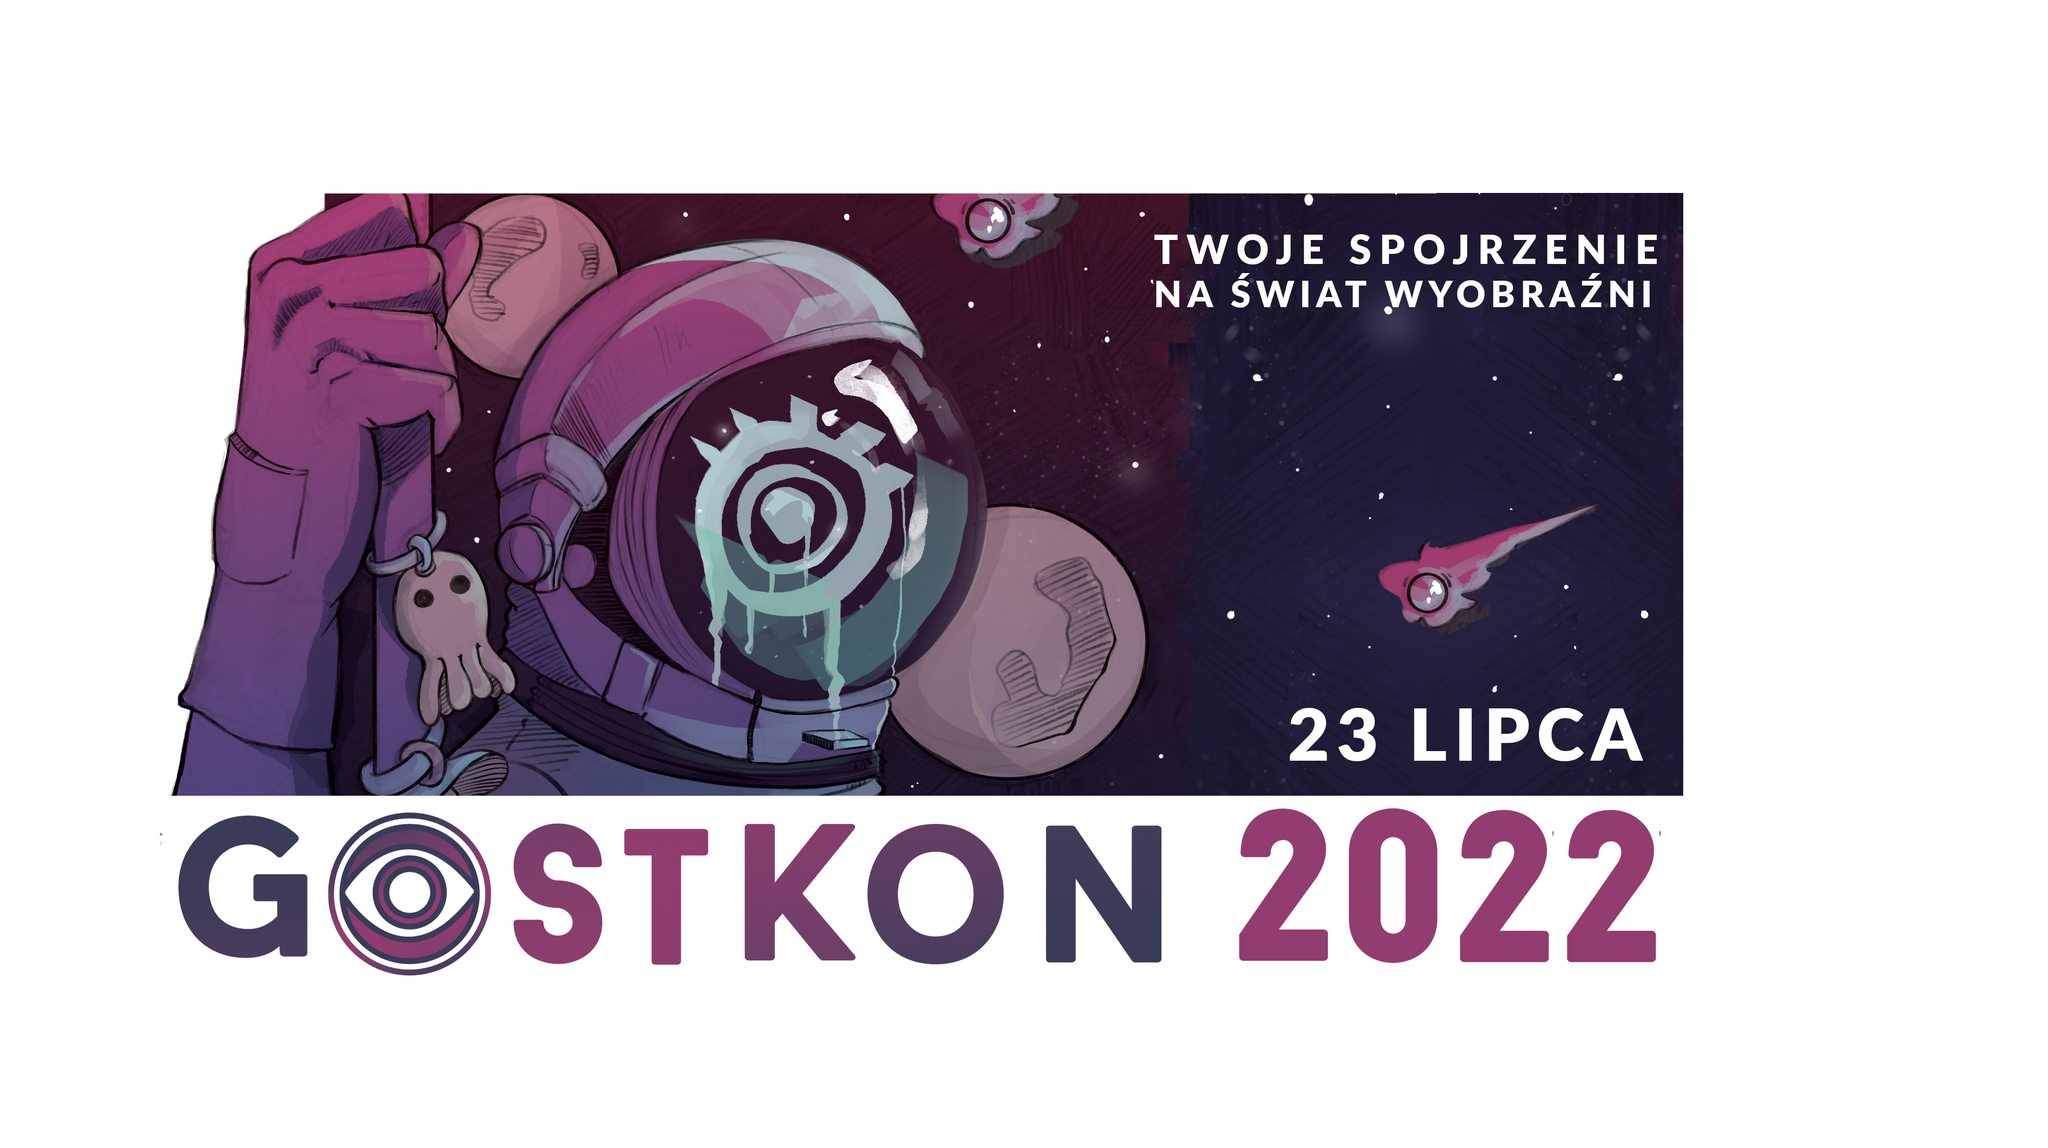 Gostkon 2022 - Gostkon 2022